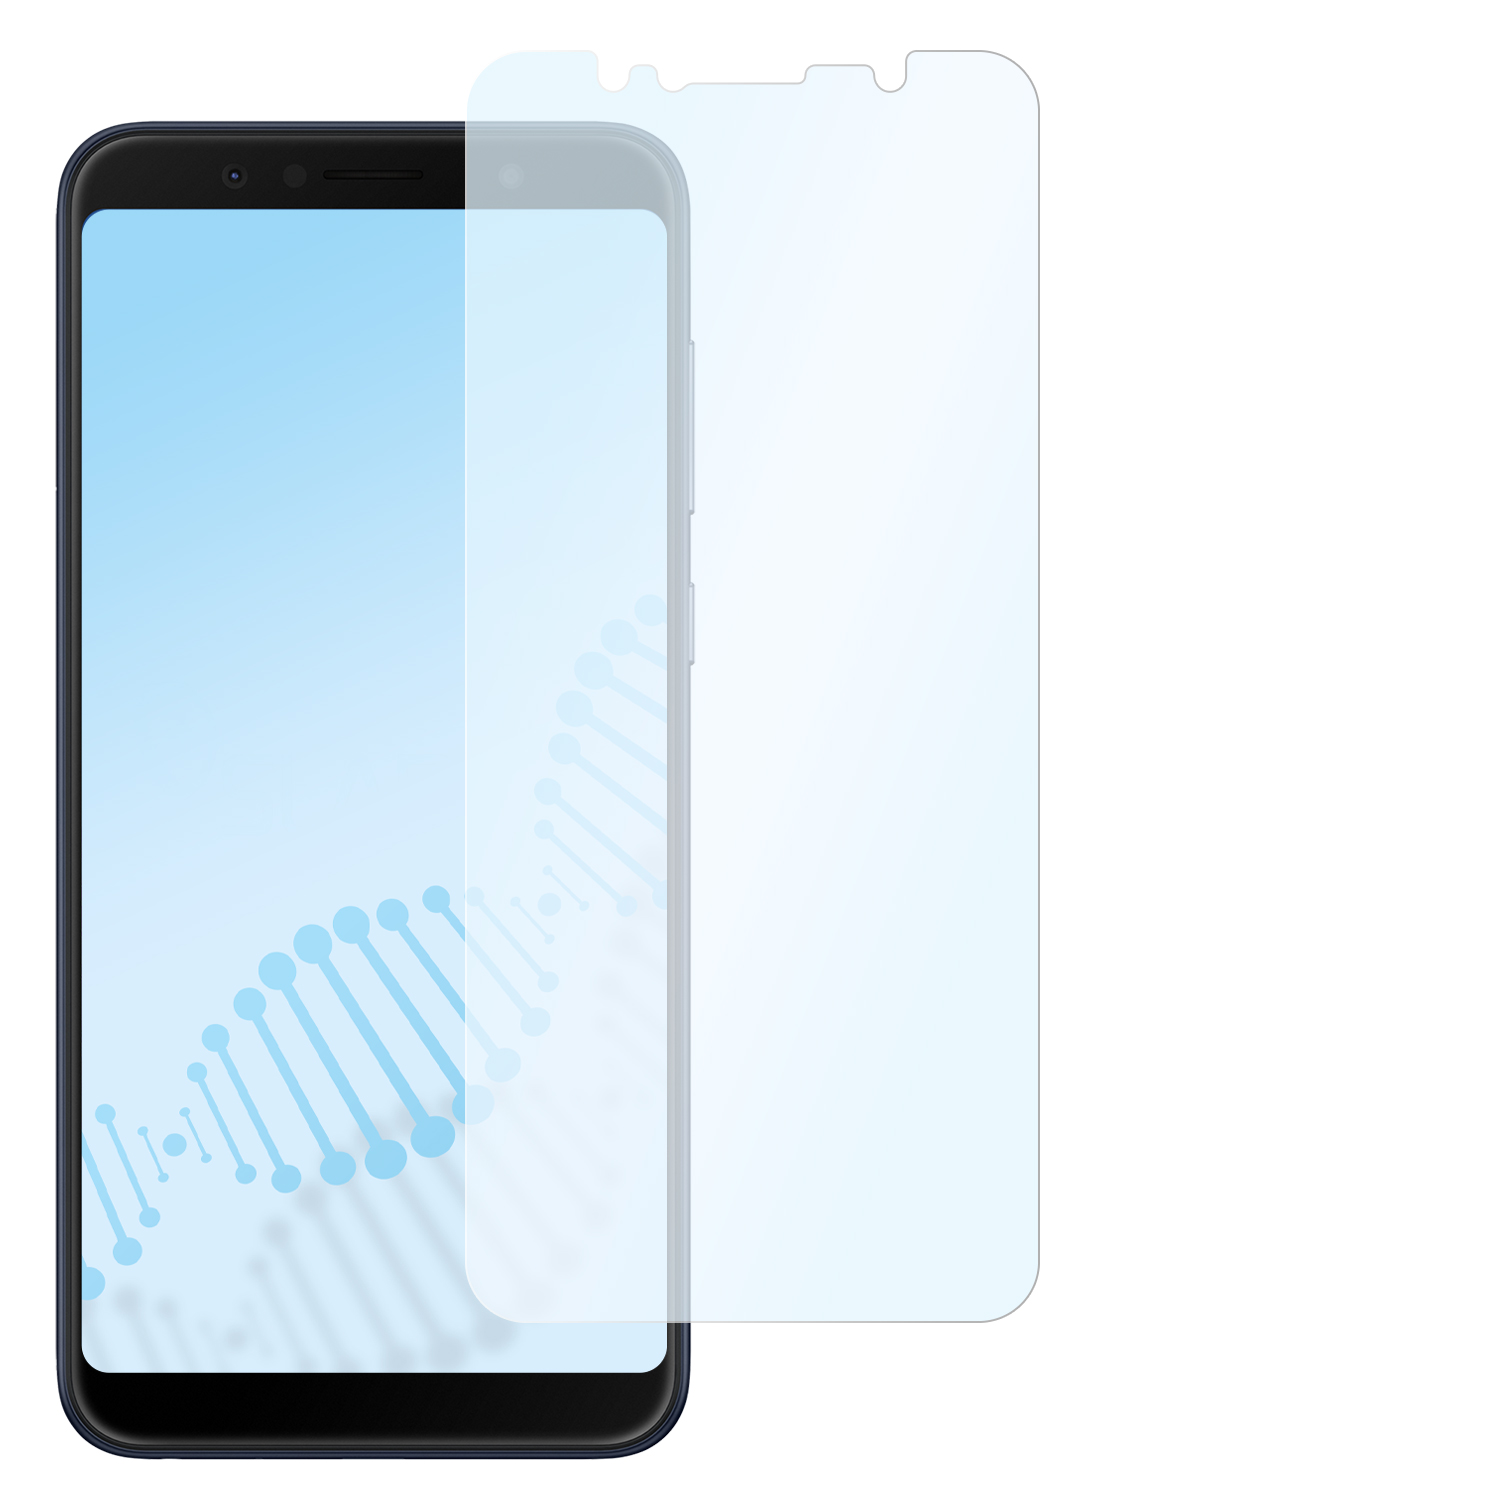 Asus antibakterielle Hybridglasfolie Pro (M1)) SLABO Max Displayschutz(für flexible ZenFone